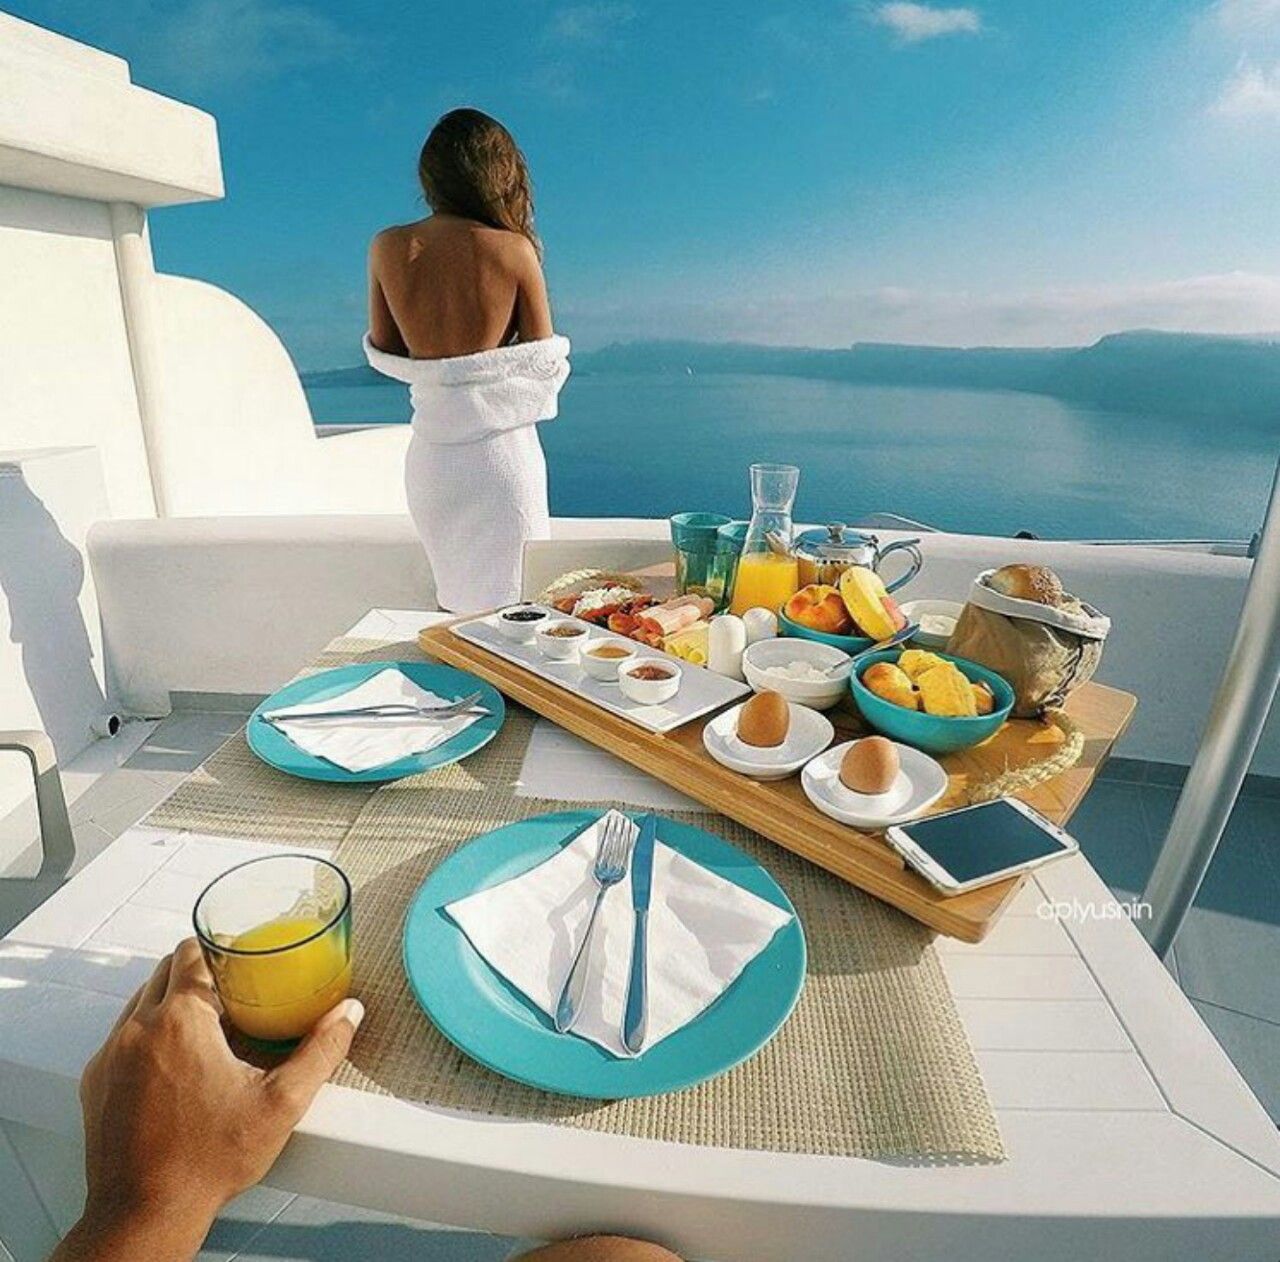 Когда все должно быть идеально. Утро на Санторини. Завтрак с видом на море. Атрибуты красивой жизни. Шикарный завтрак.